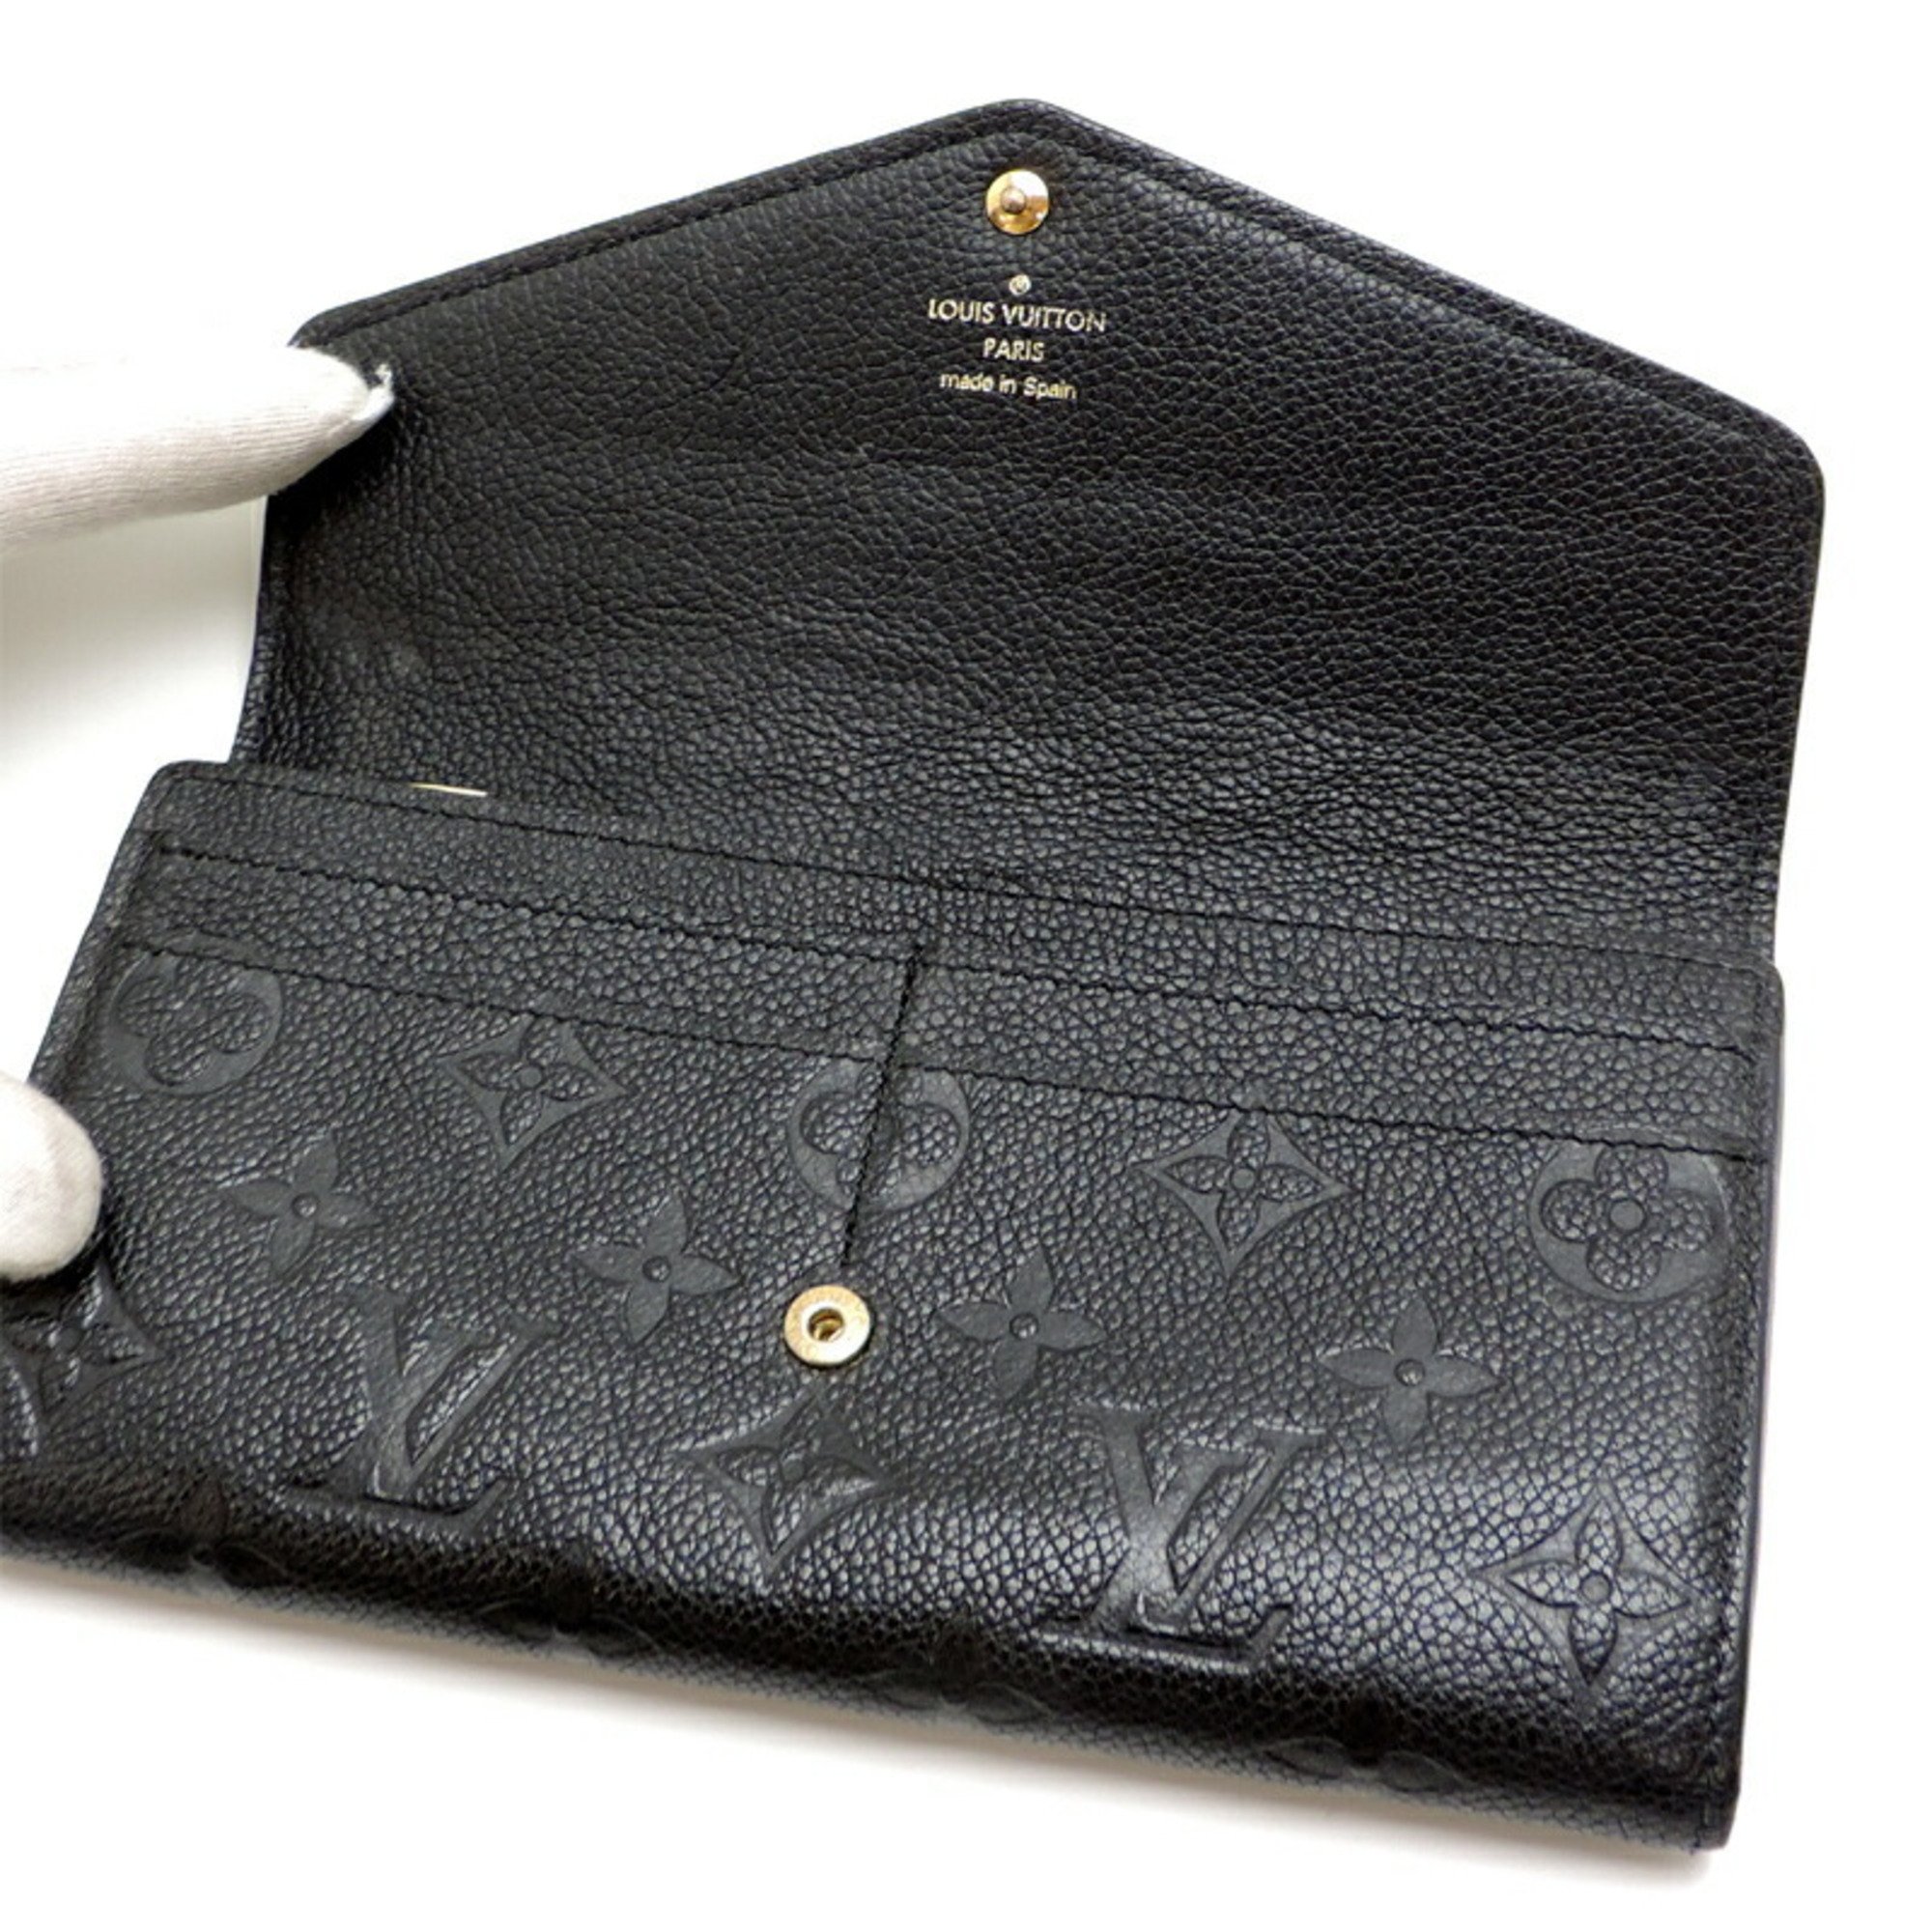 Louis Vuitton Portefeuille Sarah Women's Long Wallet M61182 Monogram Empreinte Noir (Black)